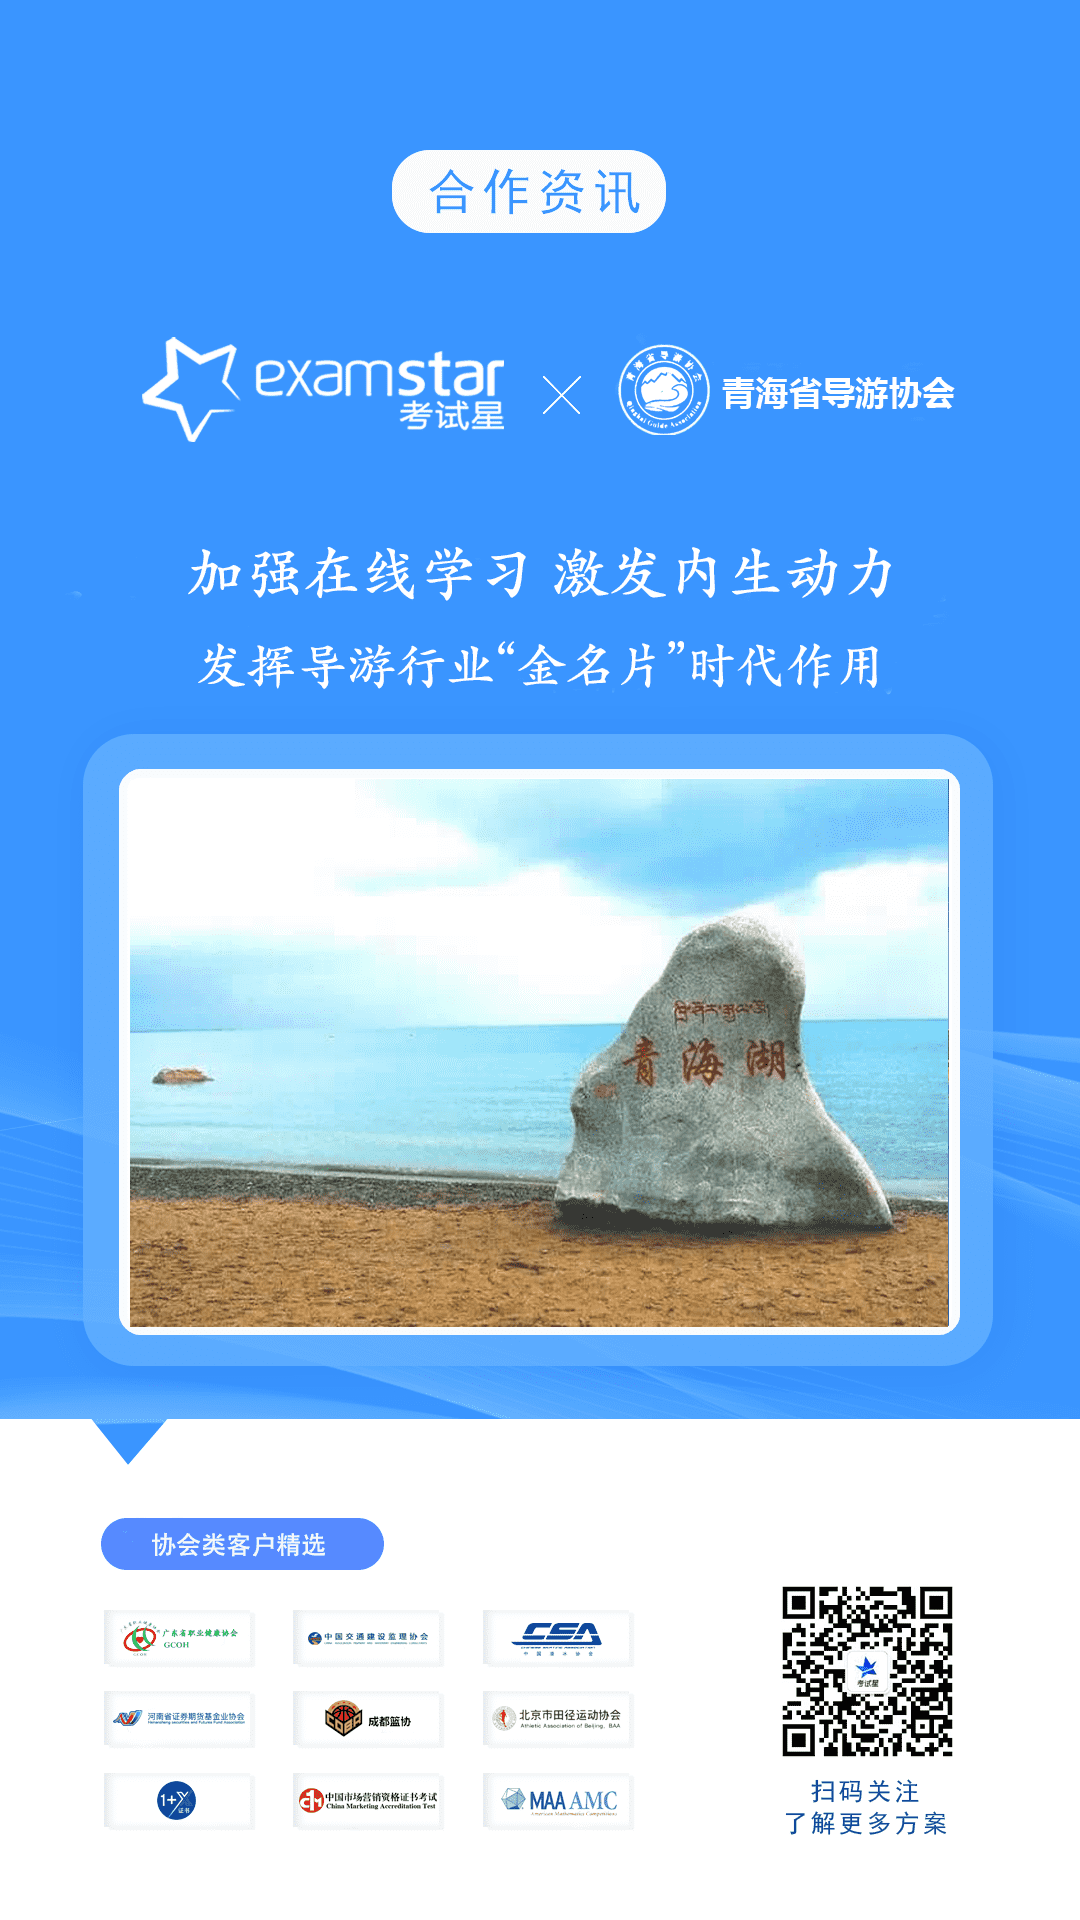 青海省导游协会-考试星在线学习平台